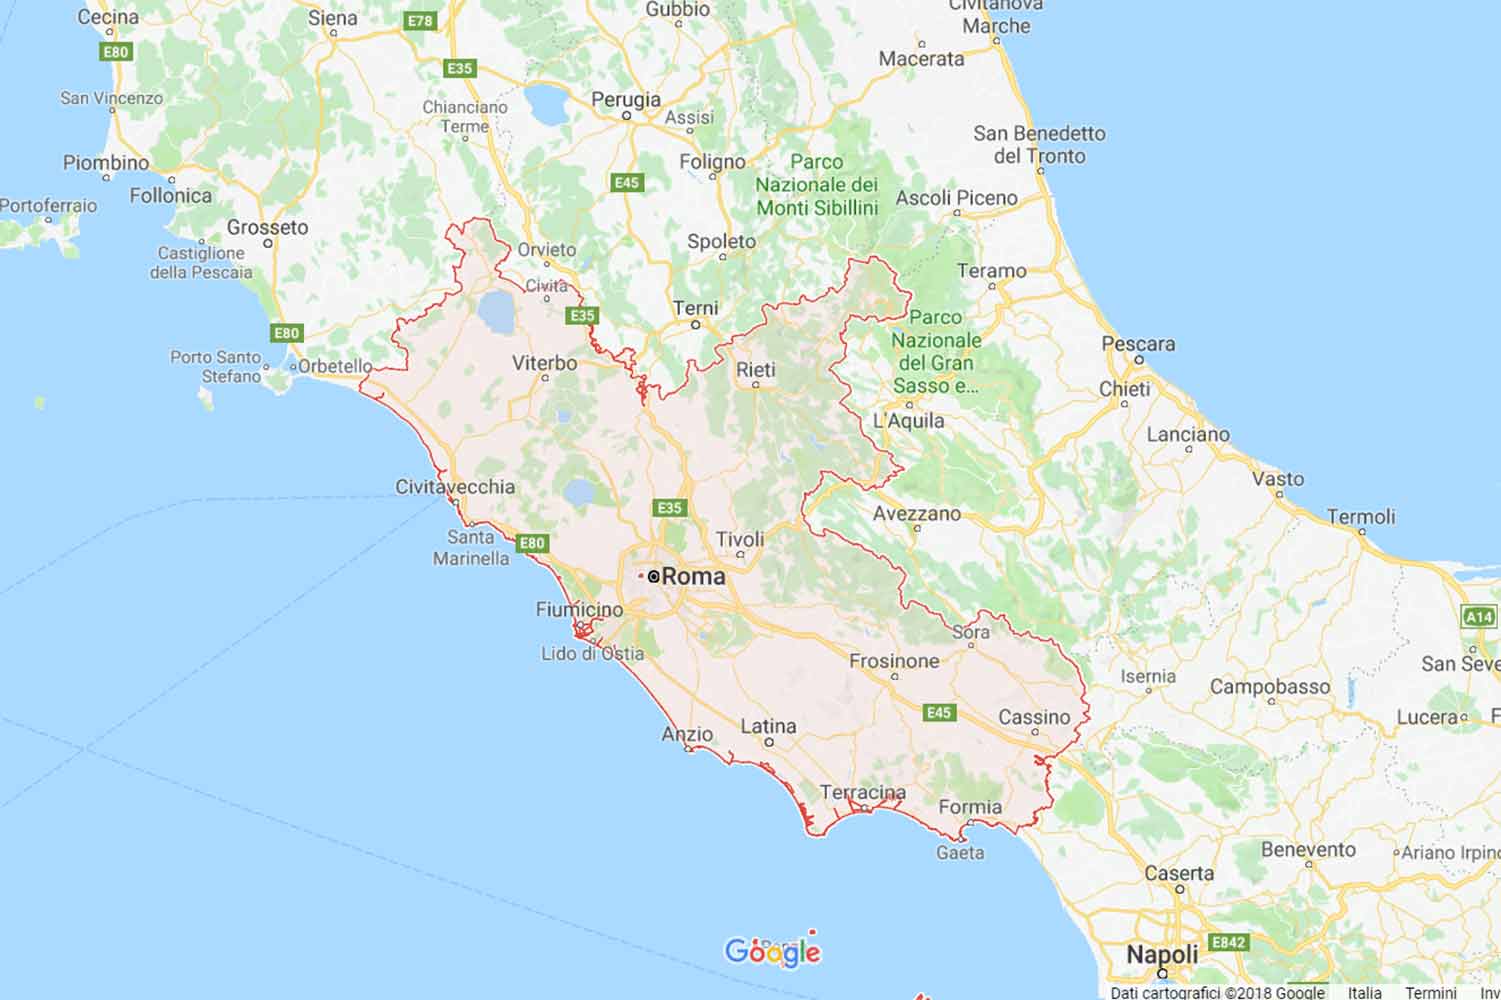 Lazio - Rieti - Colli sul Velino Preventivi Veloci google maps